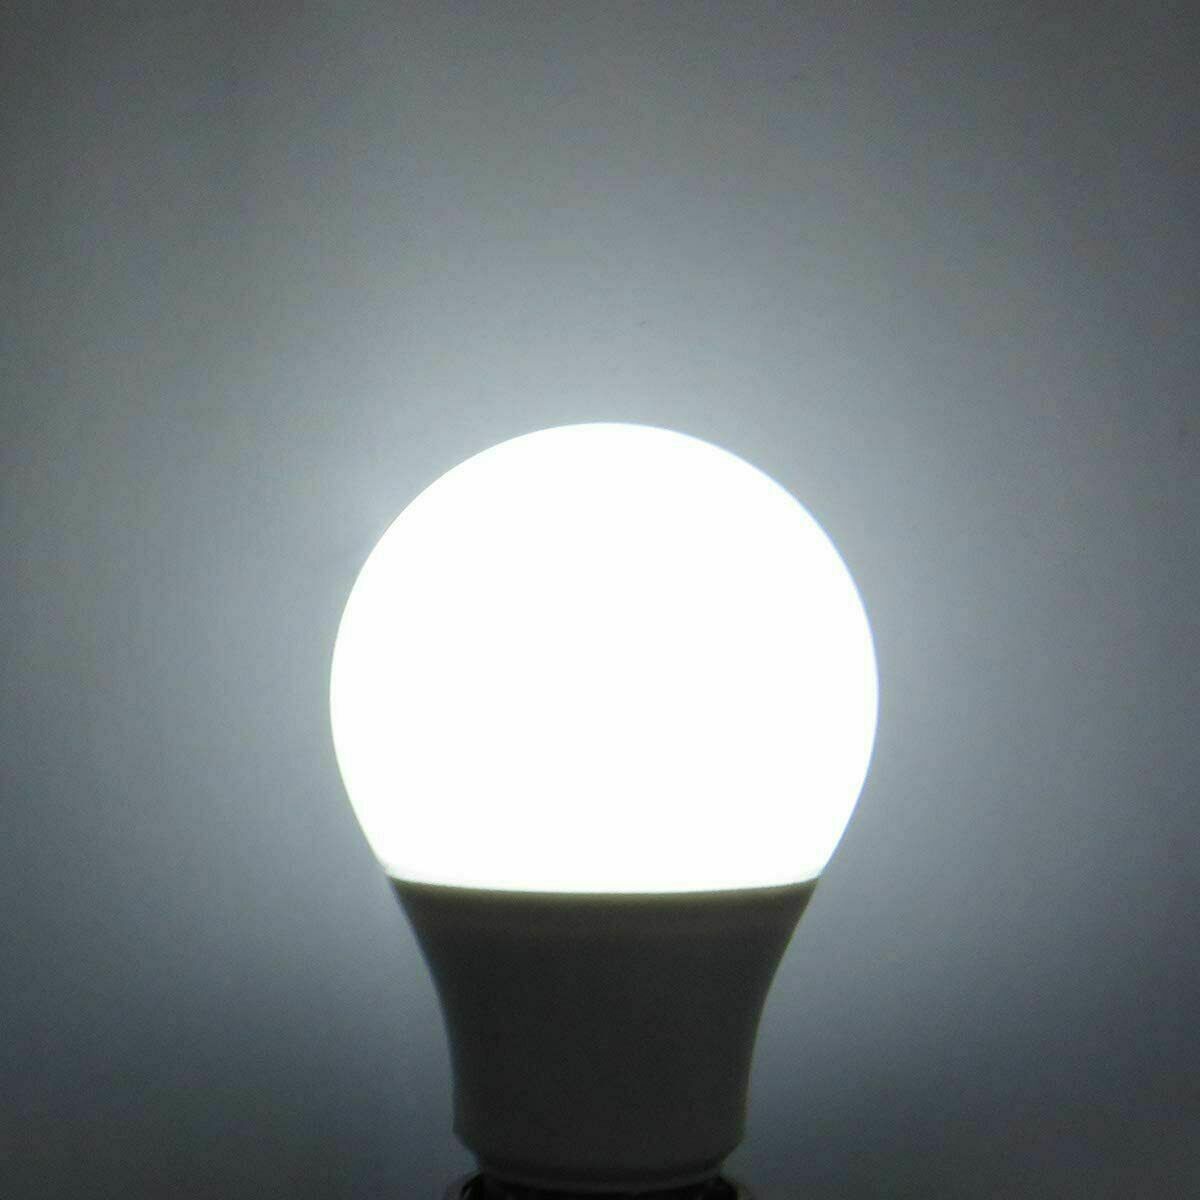 7 W E27 Schraub-LED-Licht GLS-Lampen, energiesparende Edison Cool White 6000 K nicht dimmbare Lichter